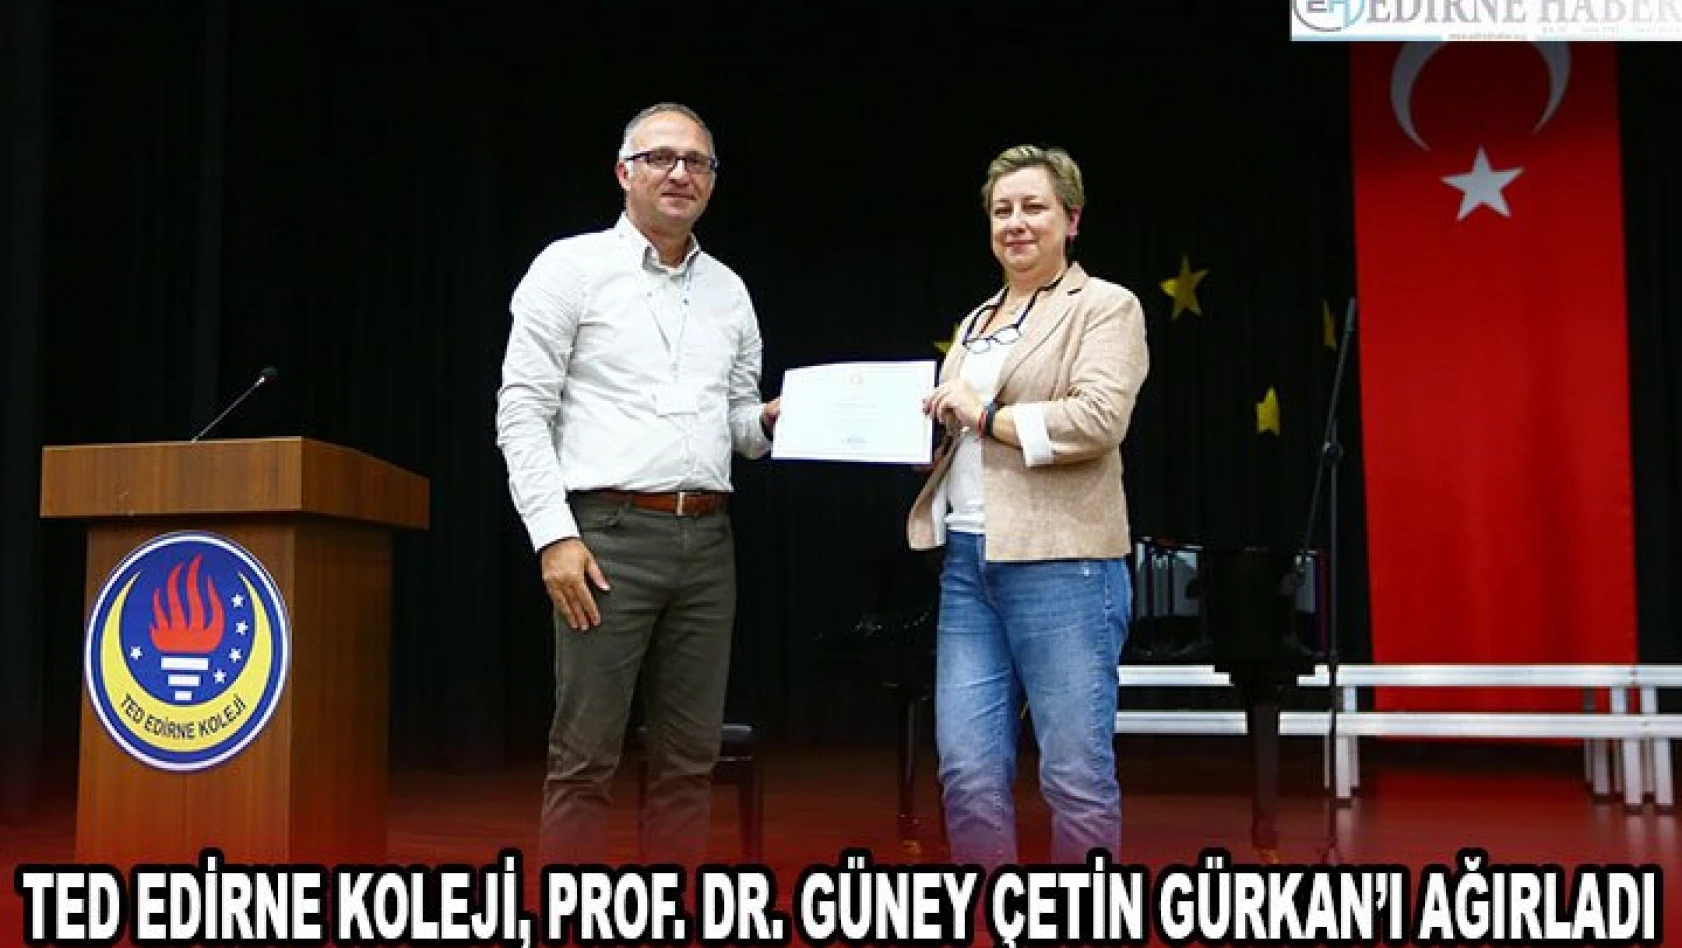 TED Edirne Koleji, Prof. Dr. Güney Çetin Gürkan'ı ağırladı